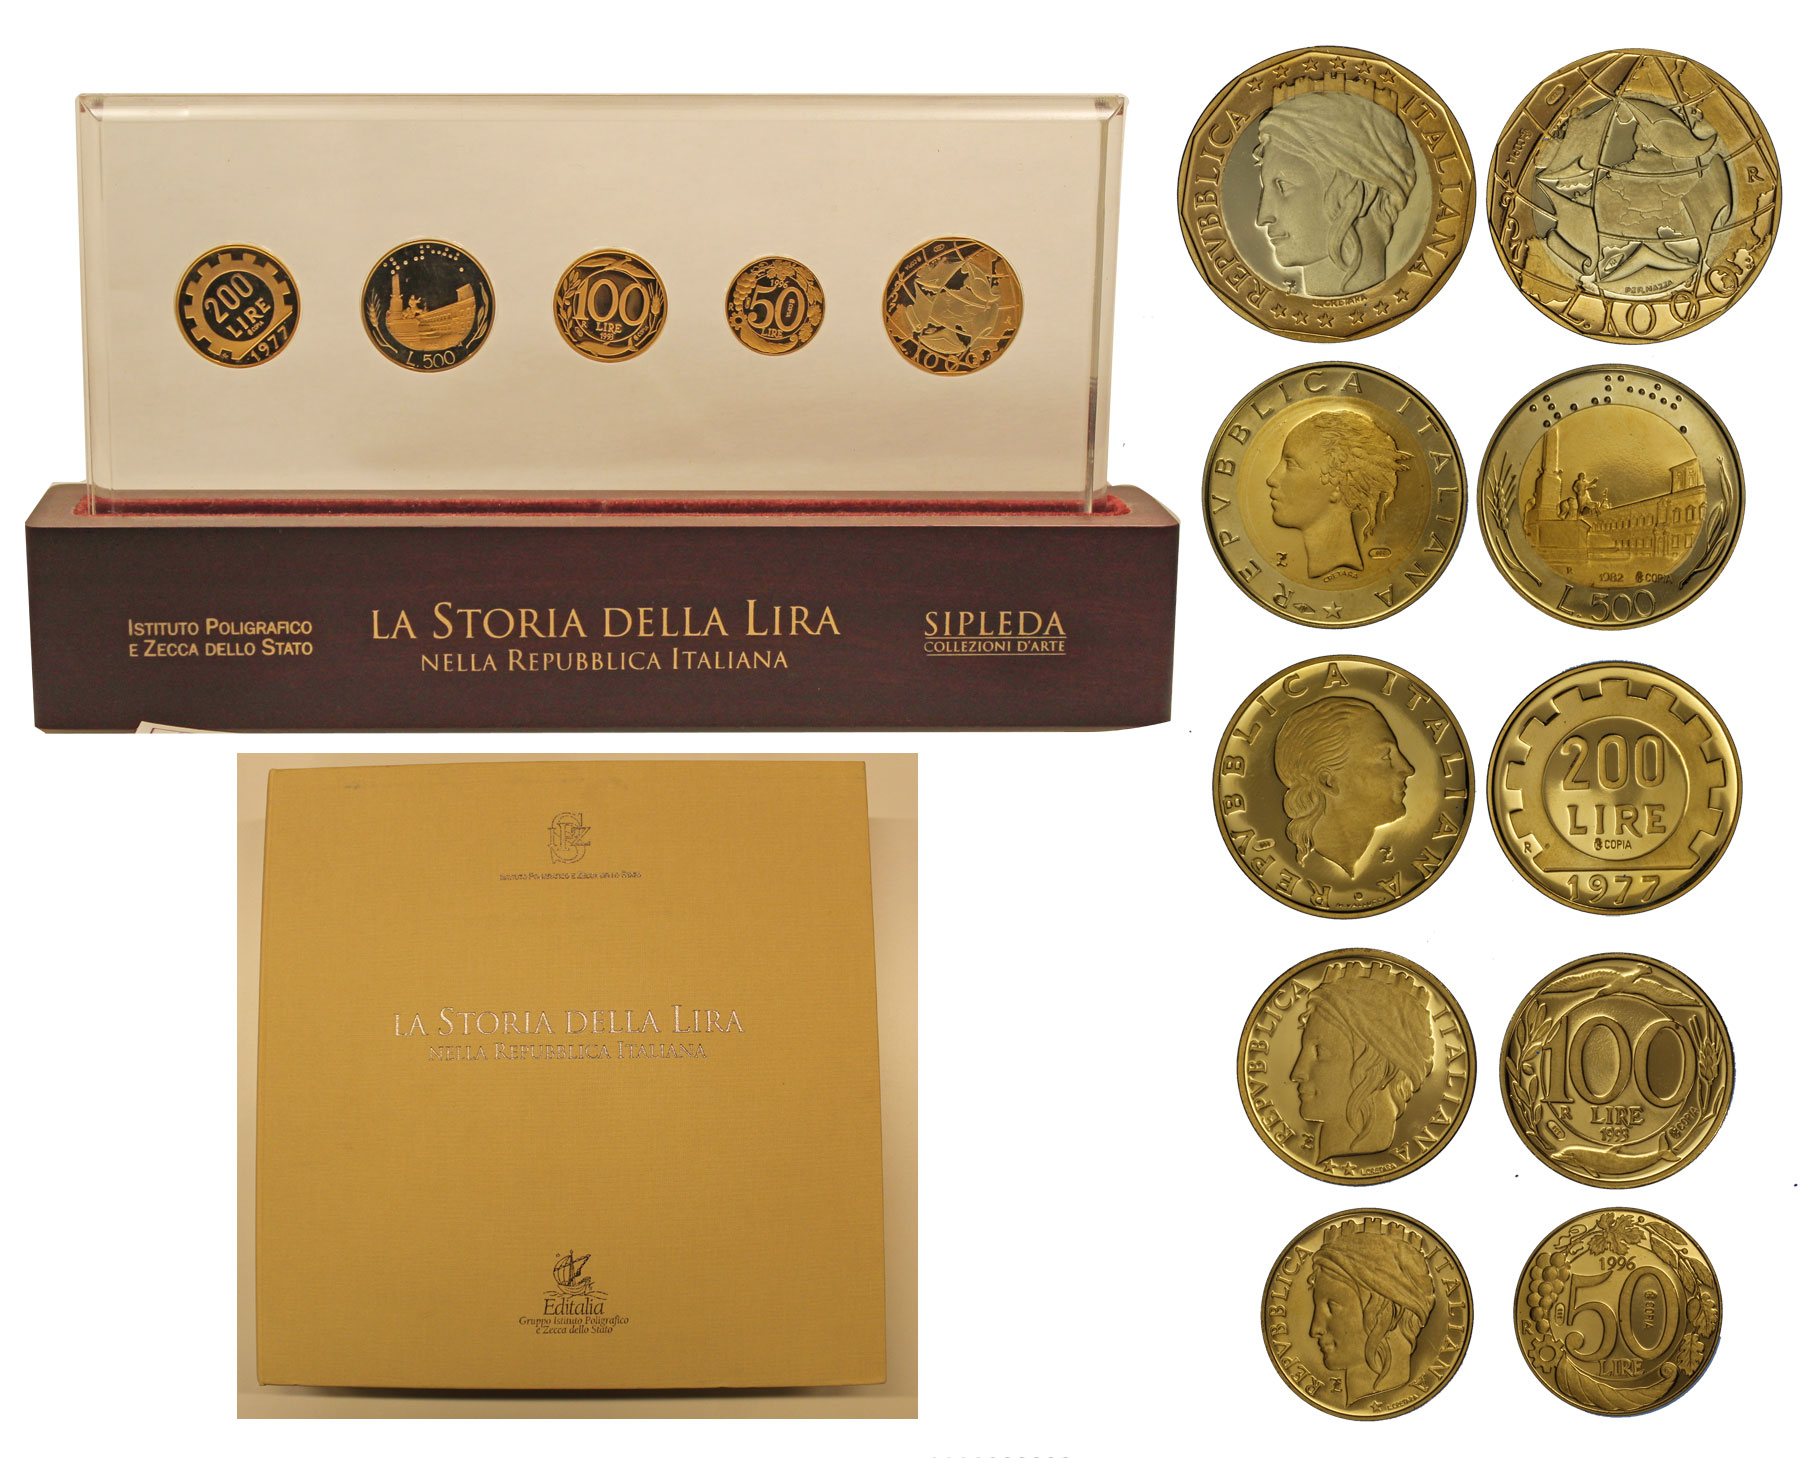 Storia della Lira - Riproduzione di Lire 200-500-100-50 e 1000 gr. 44,88 di oro 900/000 e gr. 15,10 di oro 750/0000 - conf, originale